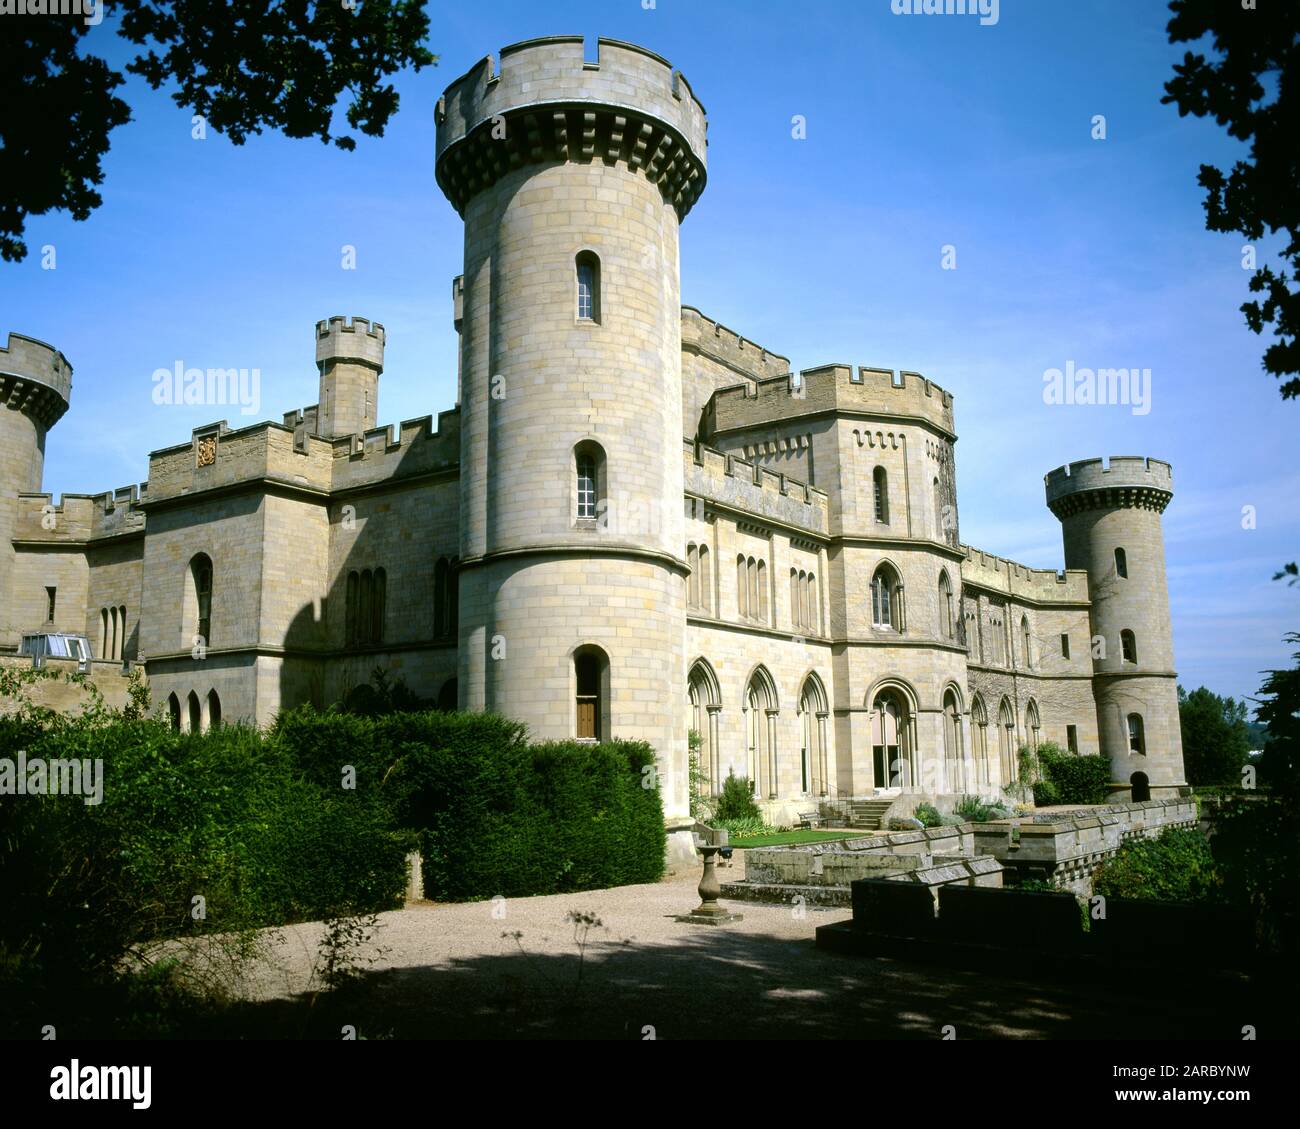 Château D'Eastnor Près De Ledbury, Herefordshire, Angleterre. Banque D'Images